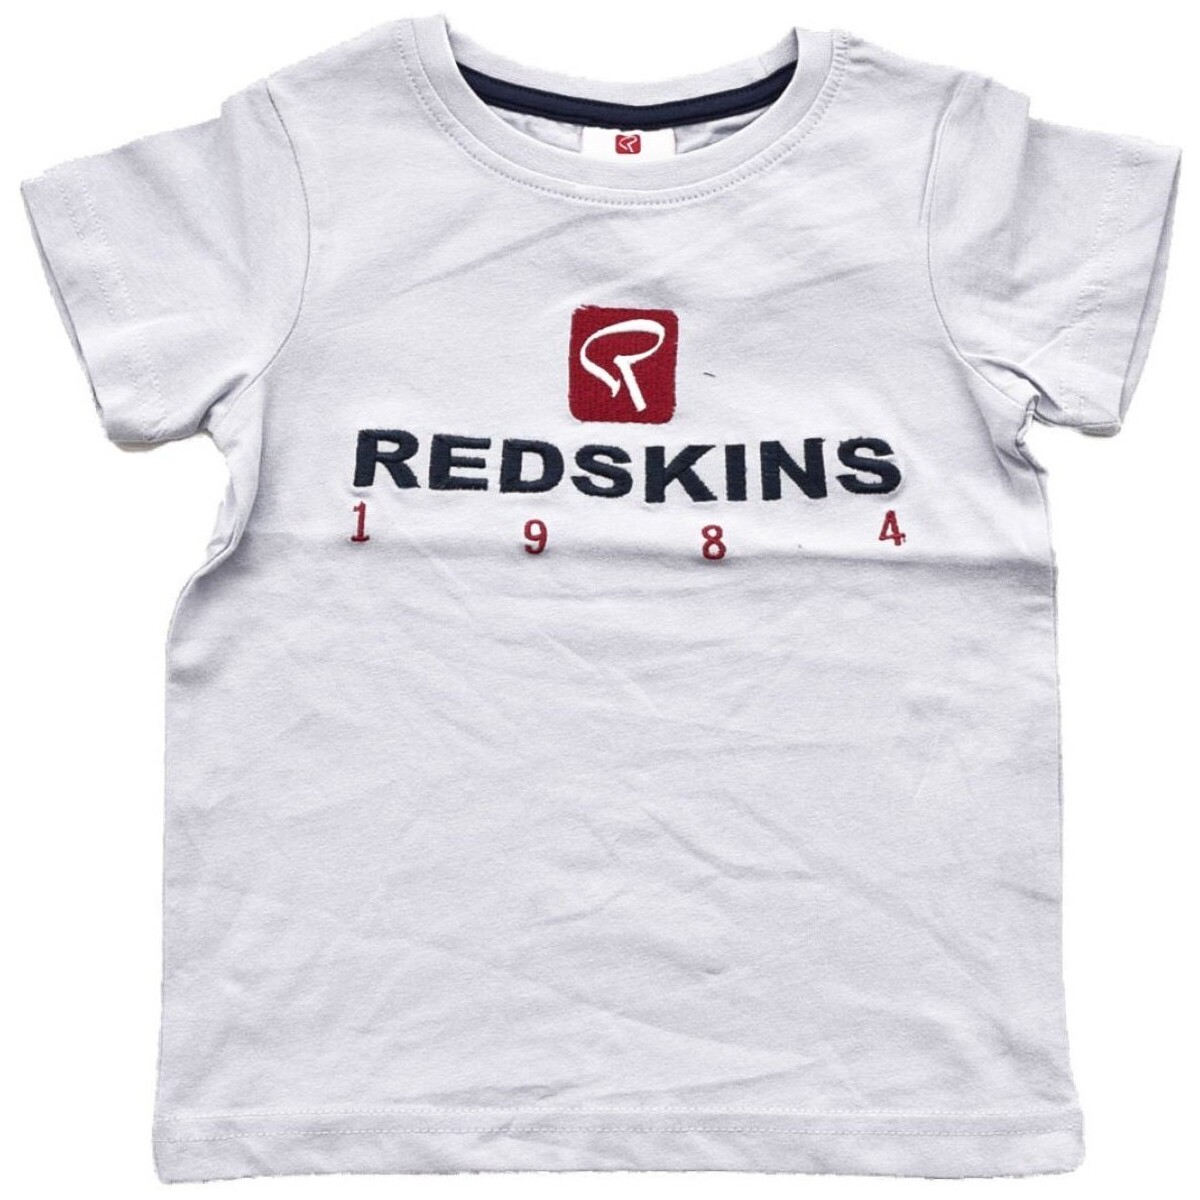 Ruhák Gyerek Pólók / Galléros Pólók Redskins 180100 Fehér